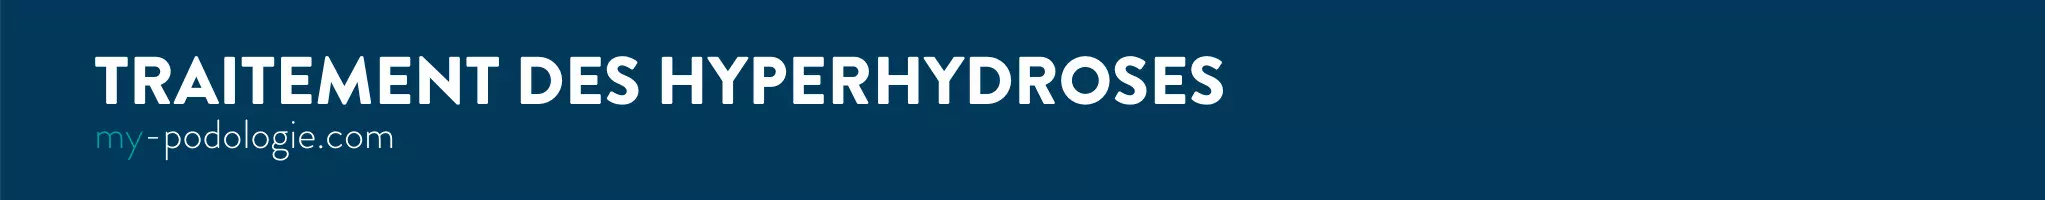 Traitements de l'hyperhydrose - My Podologie